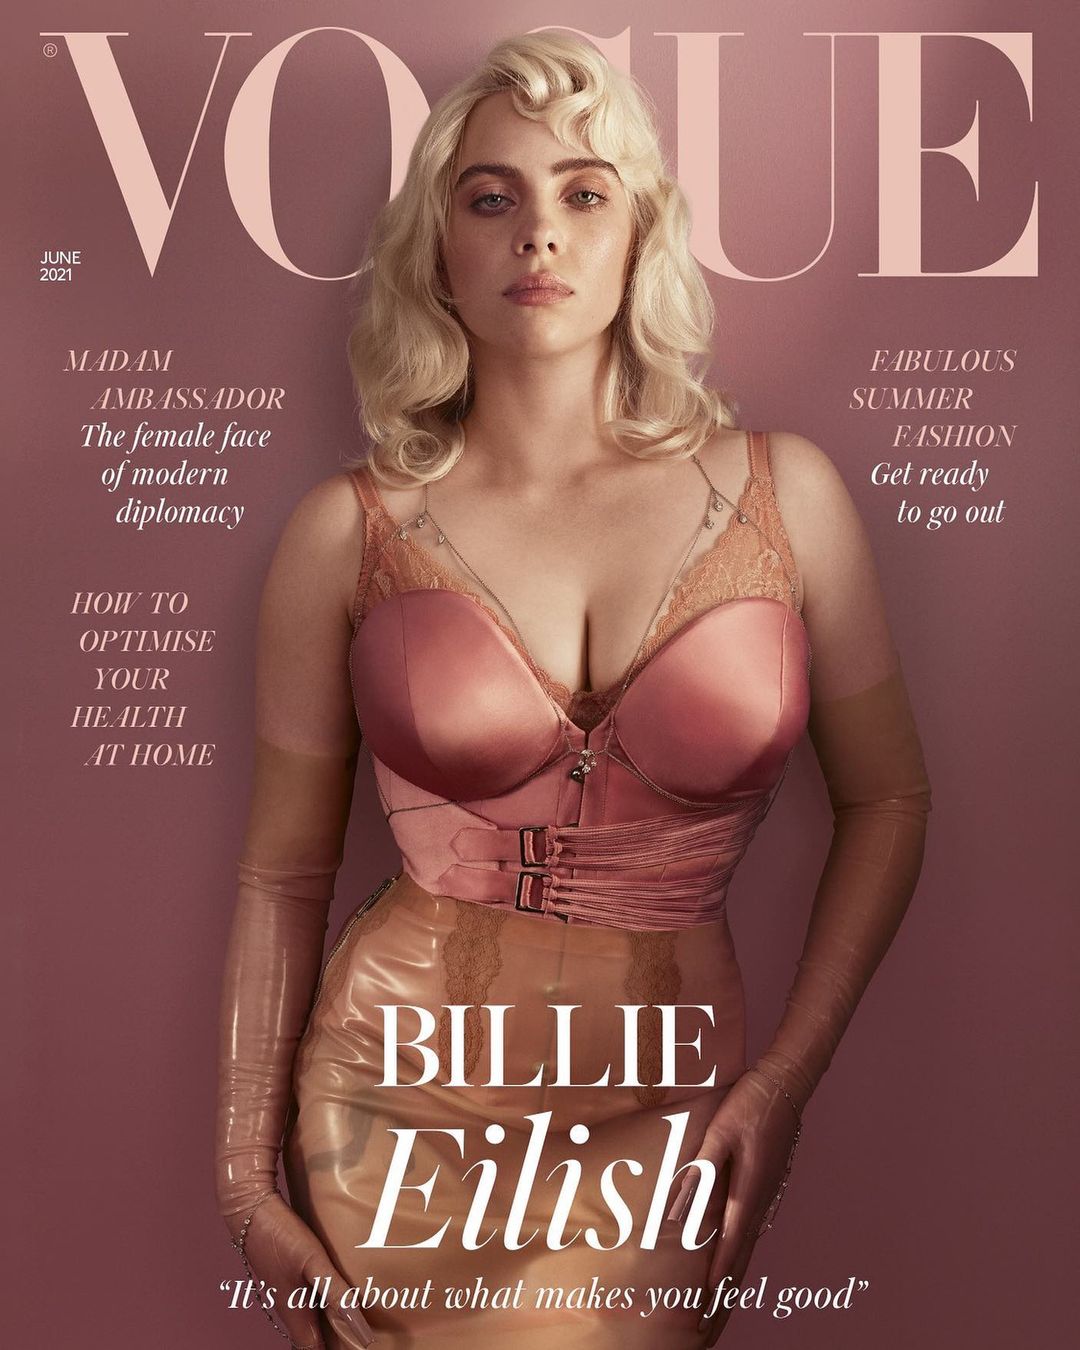 1620030967-Penampilan-Billie-Eilish-di-Majalah-Vogue-(2).jpg